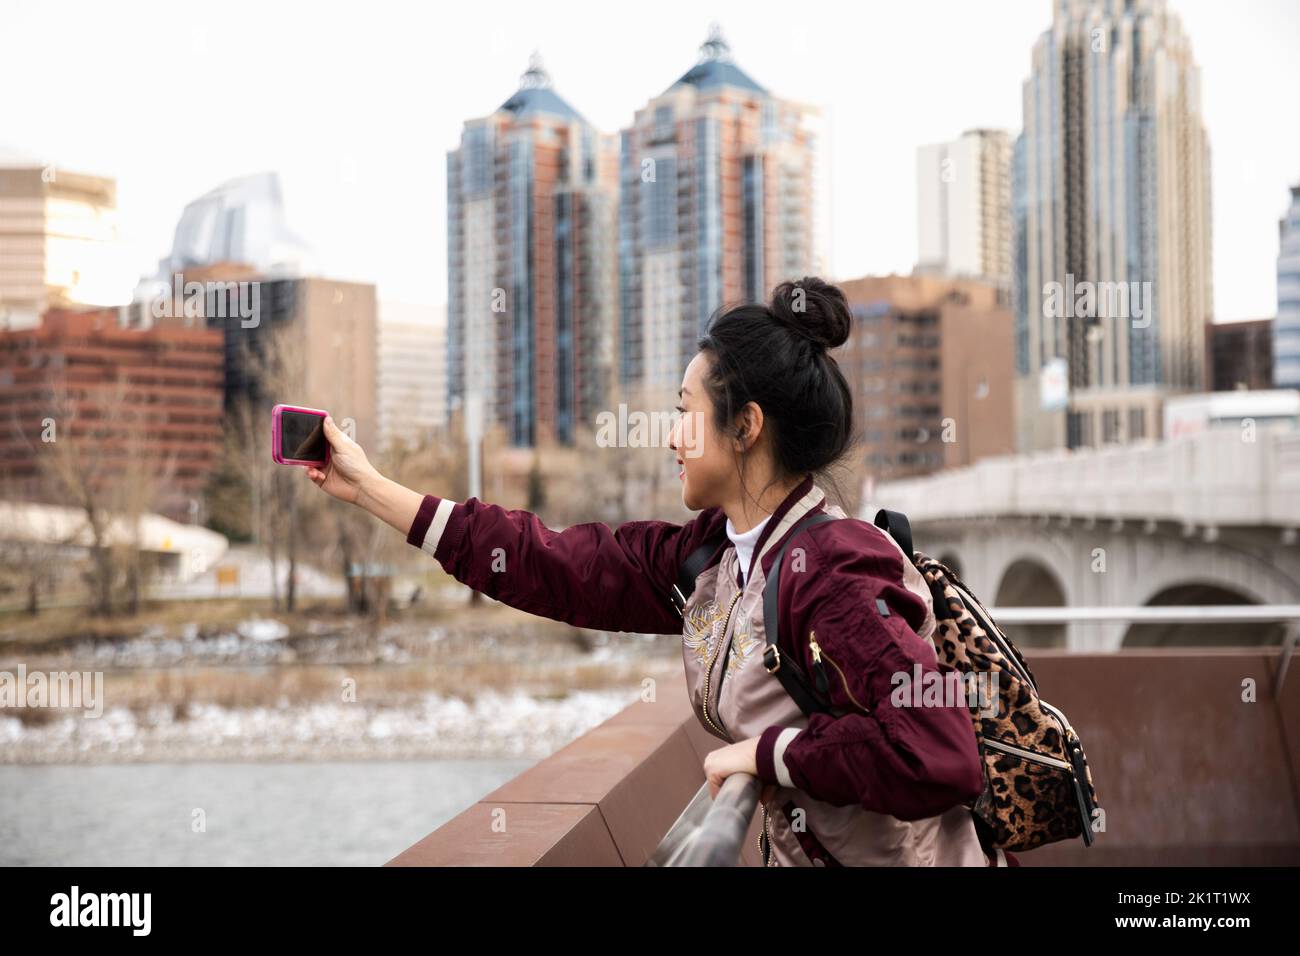 Felice ragazza turista che prende selfie con telefono con fotocamera in parco cittadino Foto Stock